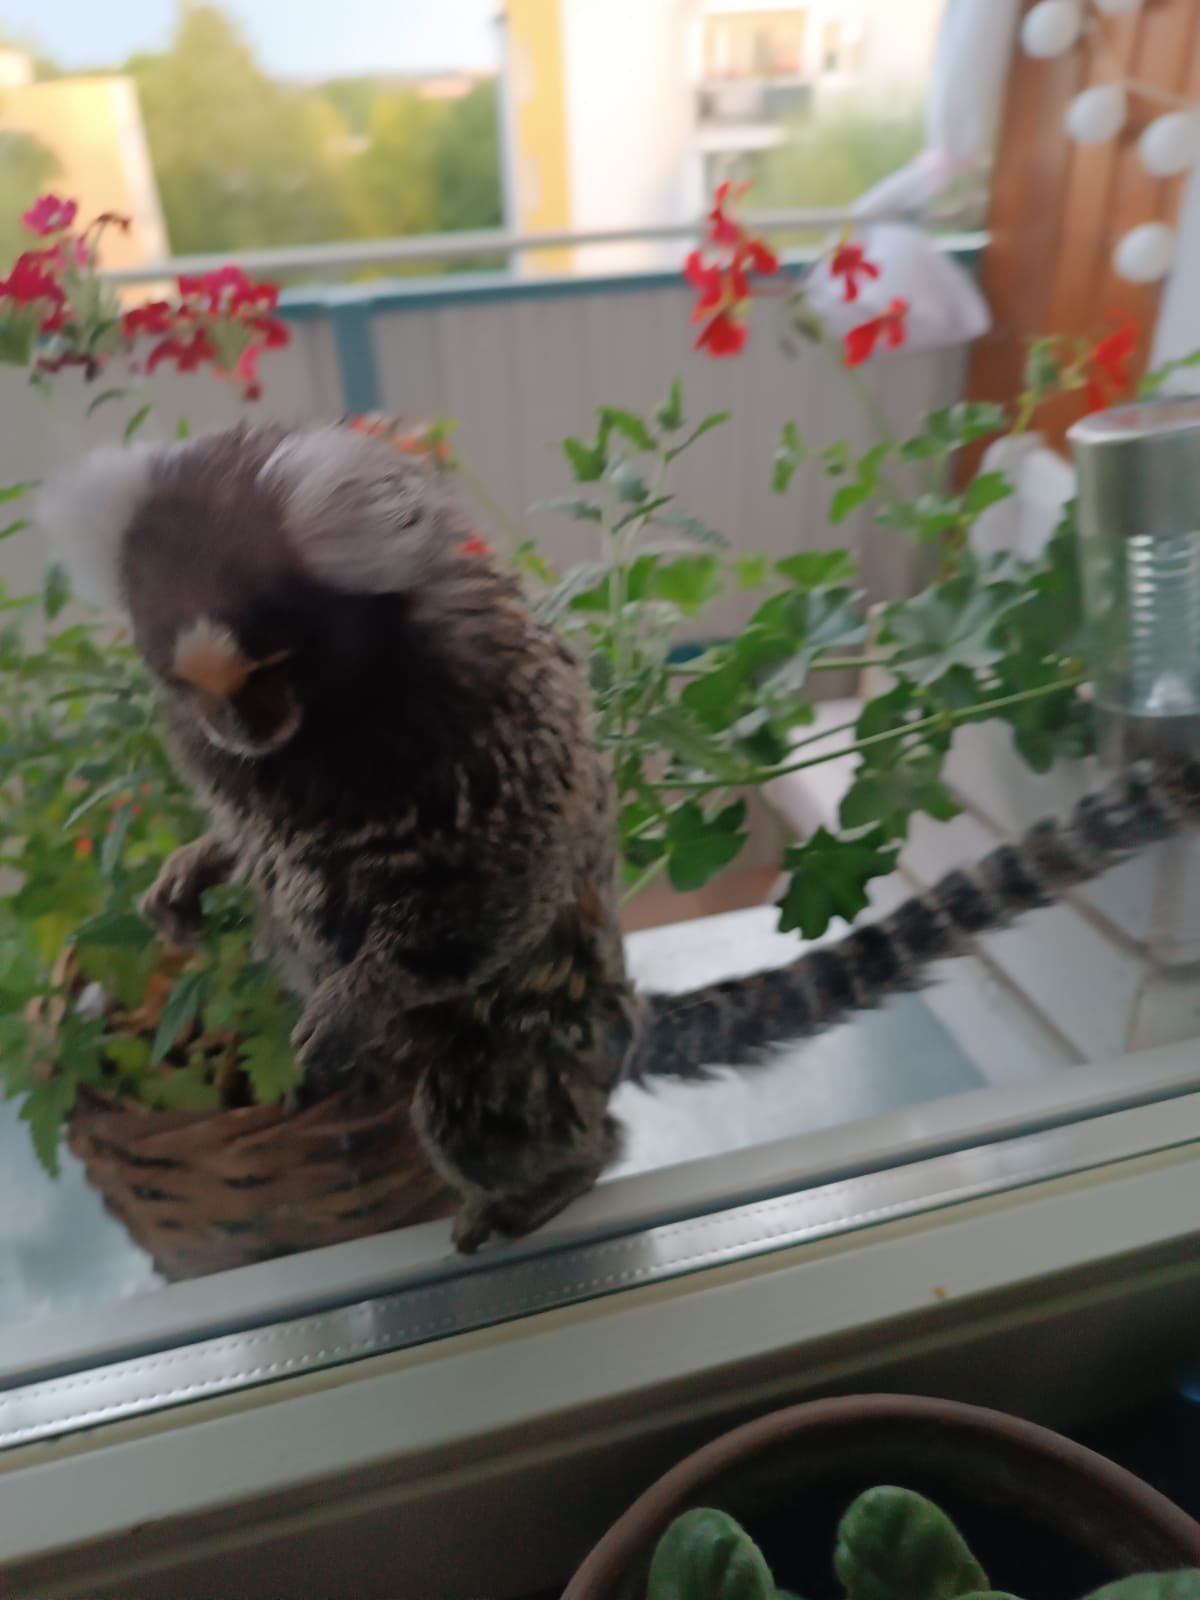 Wyjrzała przez okno i na balkonie zobaczyła… małpę. Jej zgłoszenie potraktowano poważnie (zdjęcia)